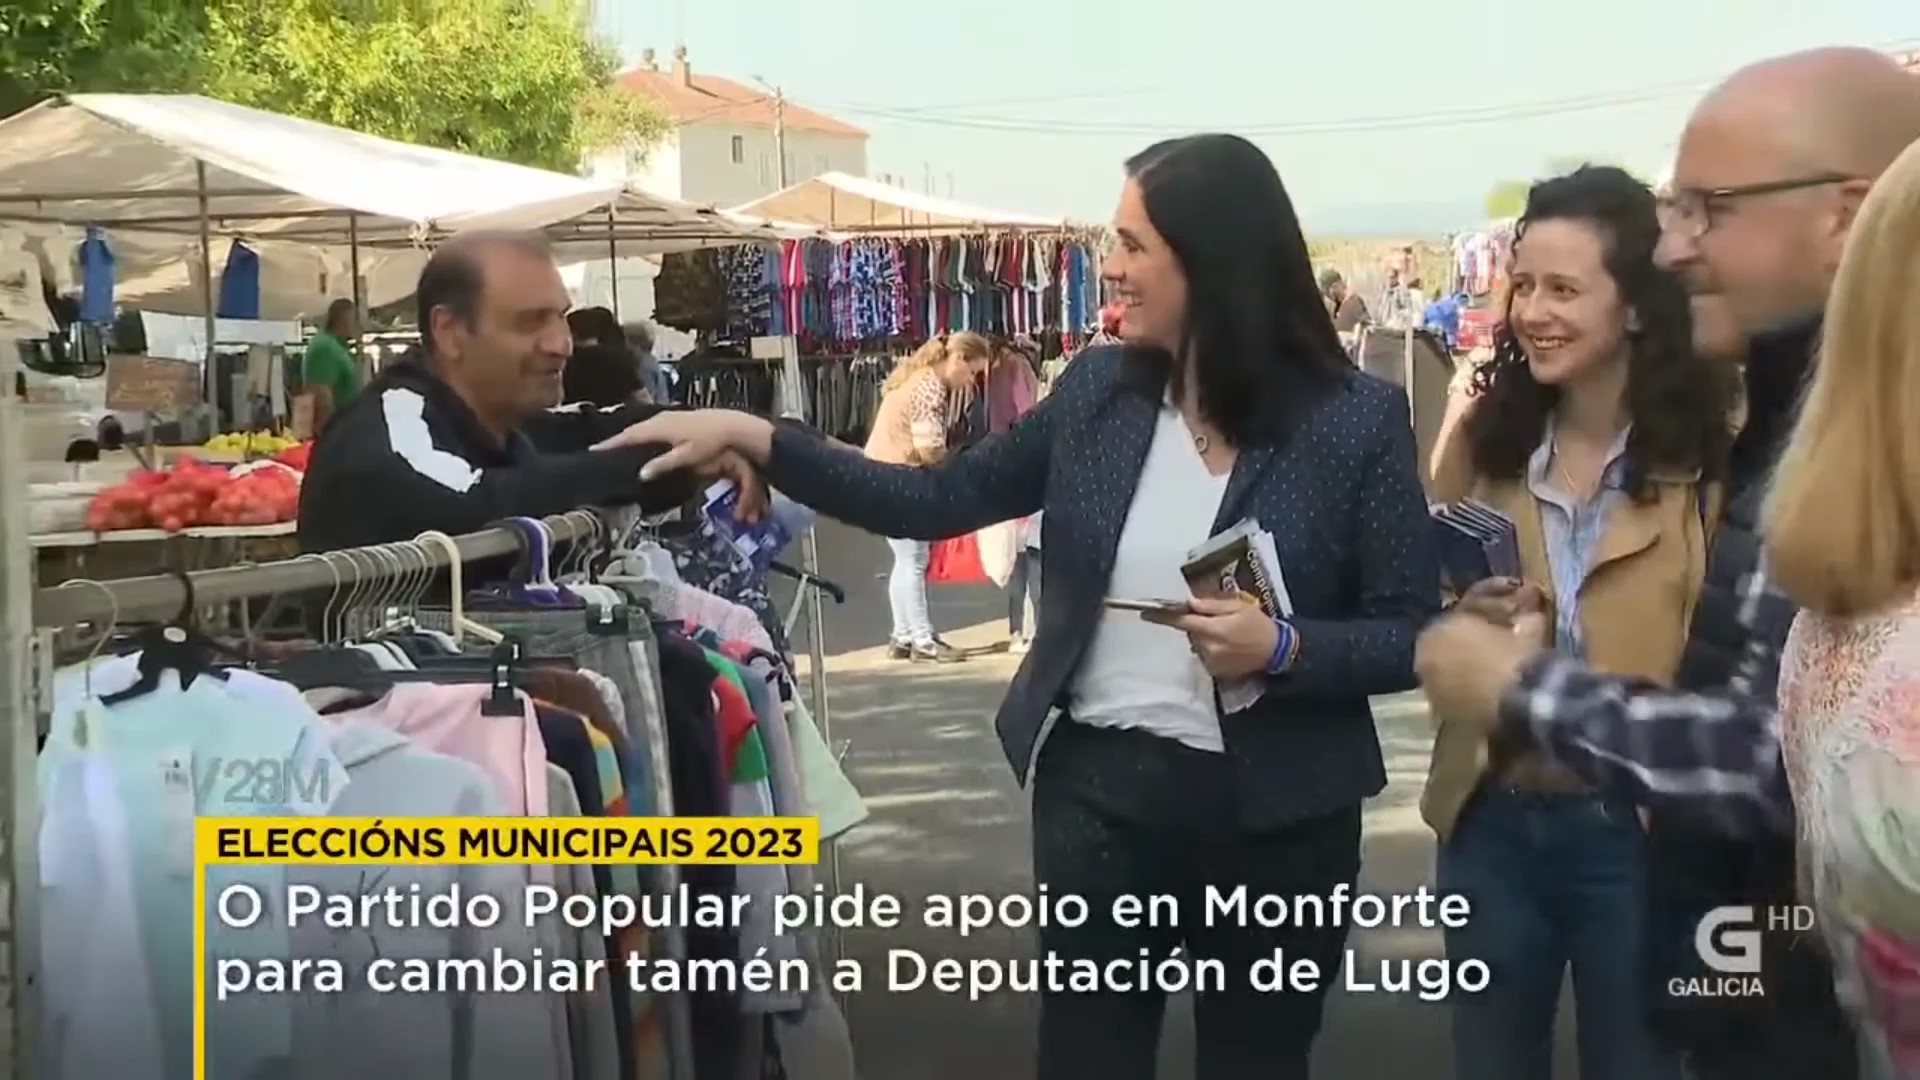 Paula Prado y Katy Varela hacen campaña en la feria de Monforte.